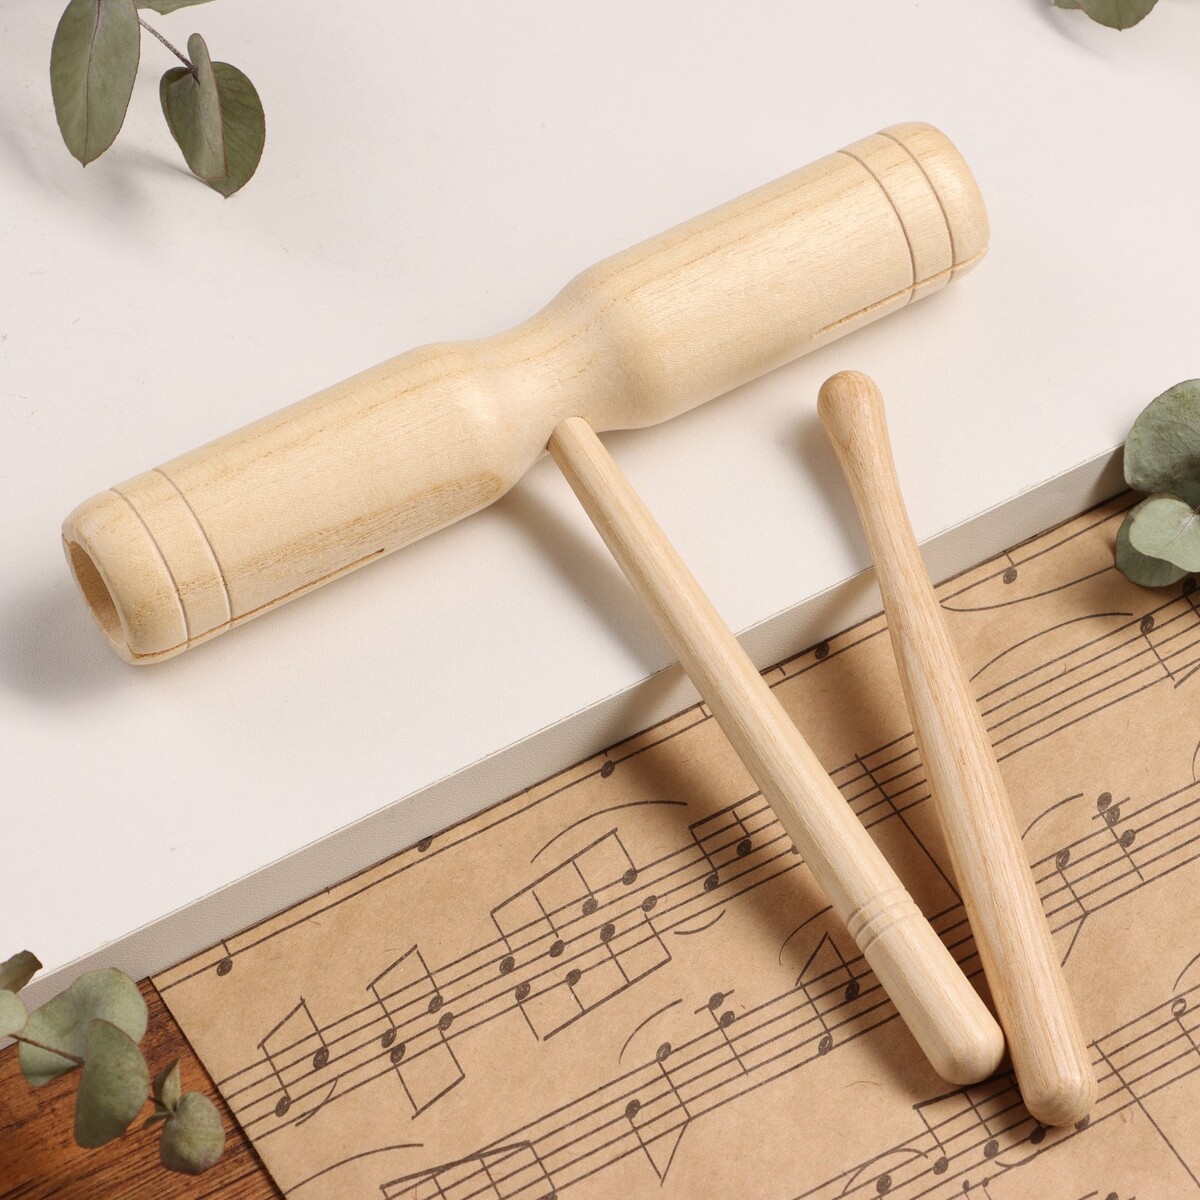 Музыкальный инструмент гуиро music life деревянный, одноручный музыкальный инструмент гуиро music life деревянный